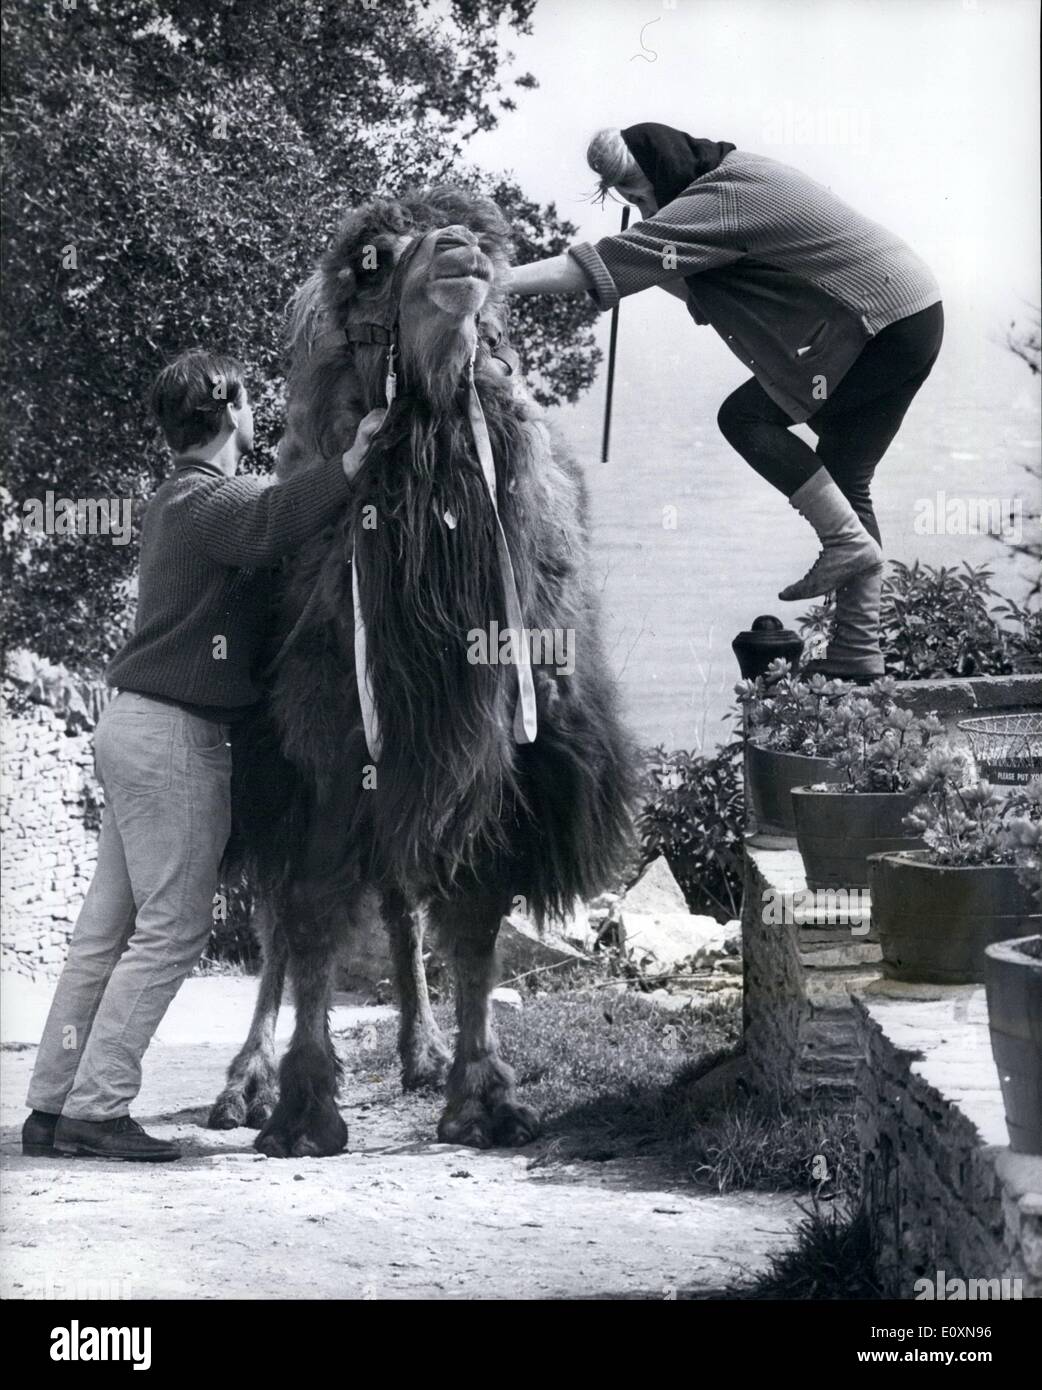 06 juin 1967 - Achmad le chameau est un résident populaire à l'auberge Tilly whim de Dorset.; Achmad, un Camel de Bactrian du Tibet, est la dernière arrivée à l'auberge Tilly whim à Swanage, Dorset, et est déjà un résident populaire. Il est toujours prêt à aider avec le travail lourd, sans cesse prêt à donner des manèges aux enfants, et déborda par le simple logement fourni pour lui dans la cour. Mais Achmad présente des inconvénients. Car bien qu'il travaille uniquement pour son garder, son garder est assez coûteux, en dehors de l'500 qu'il a coûté à Mme Banque D'Images